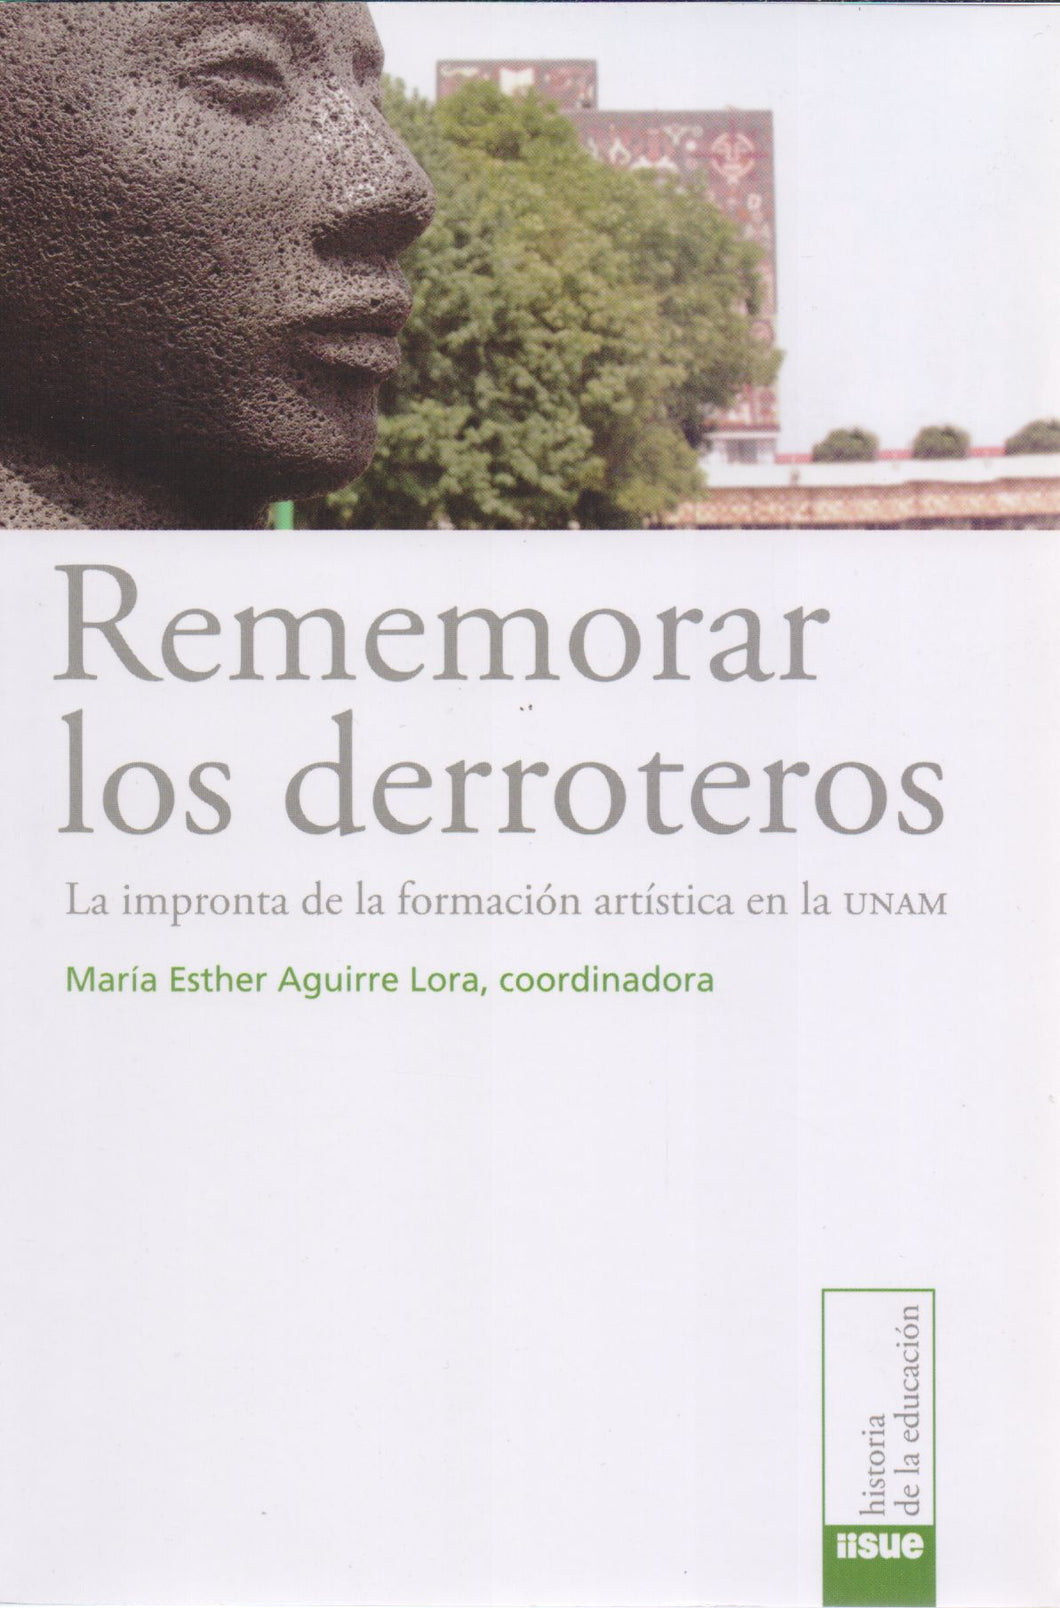 Rememorar los derroteros La impronta de la formación artística en la Unam María Esther Aguirre Lora (coord)